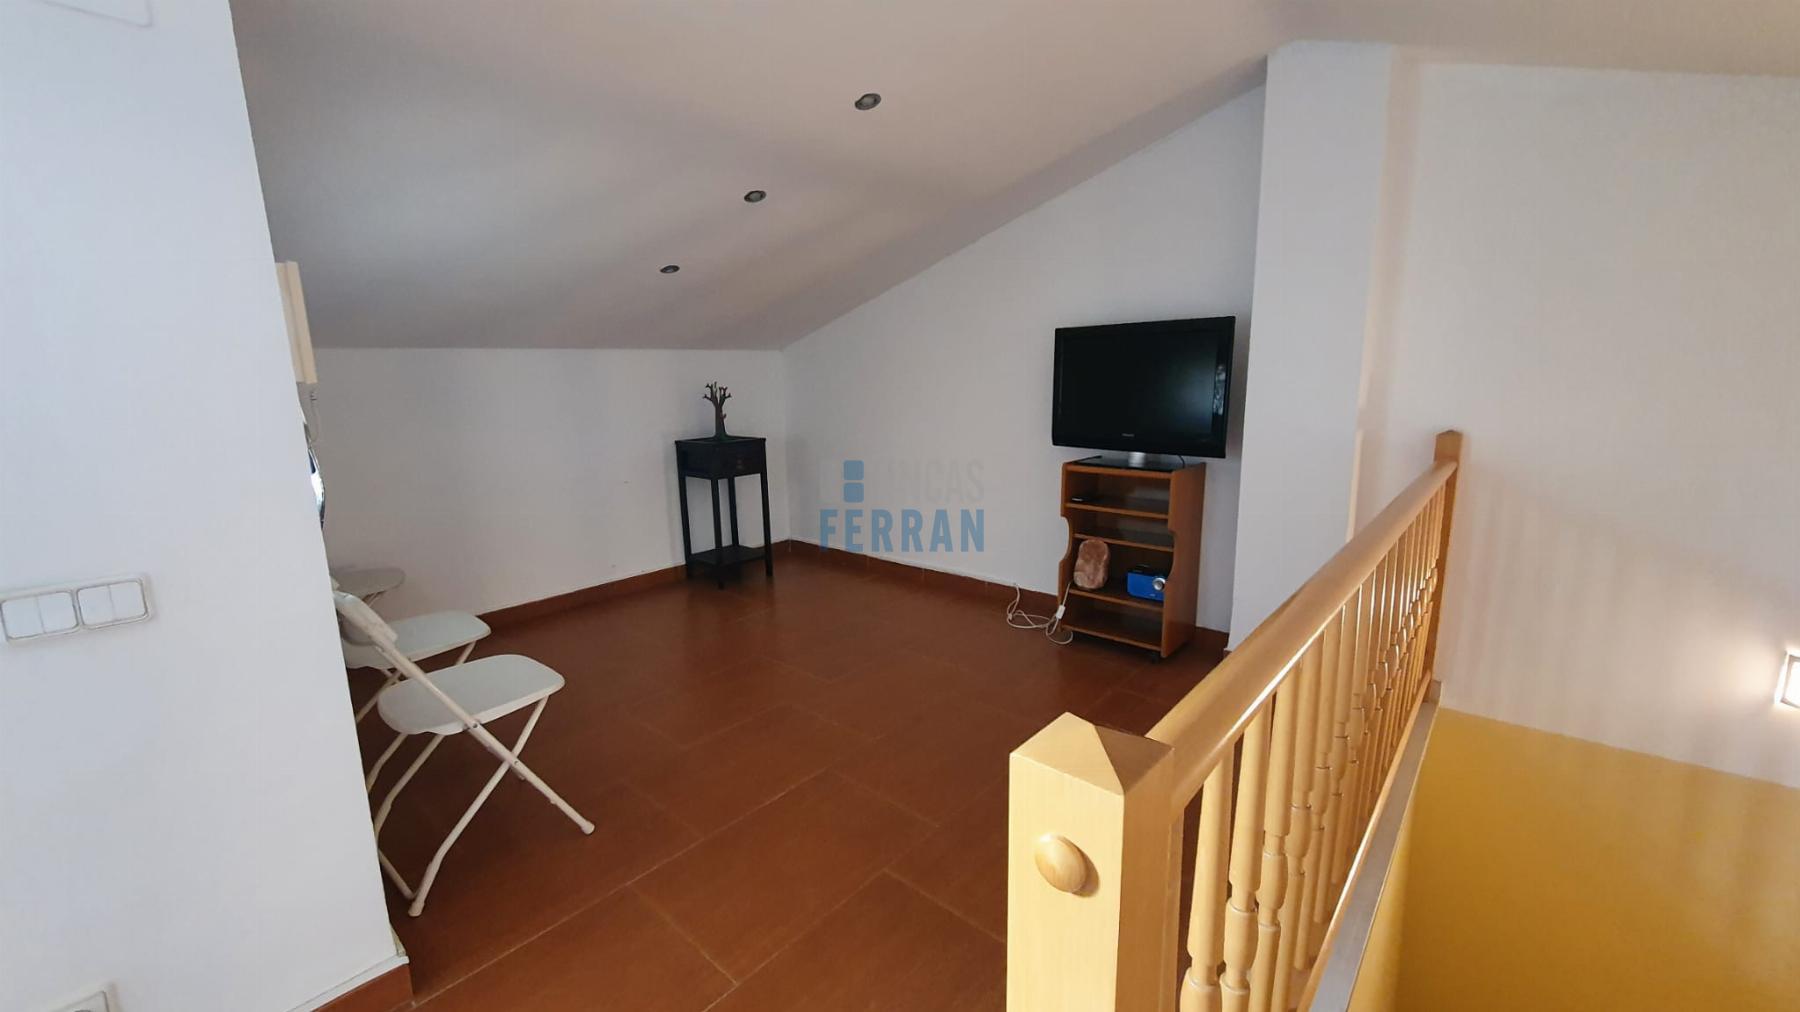 For sale of flat in Llorenç del Penedès